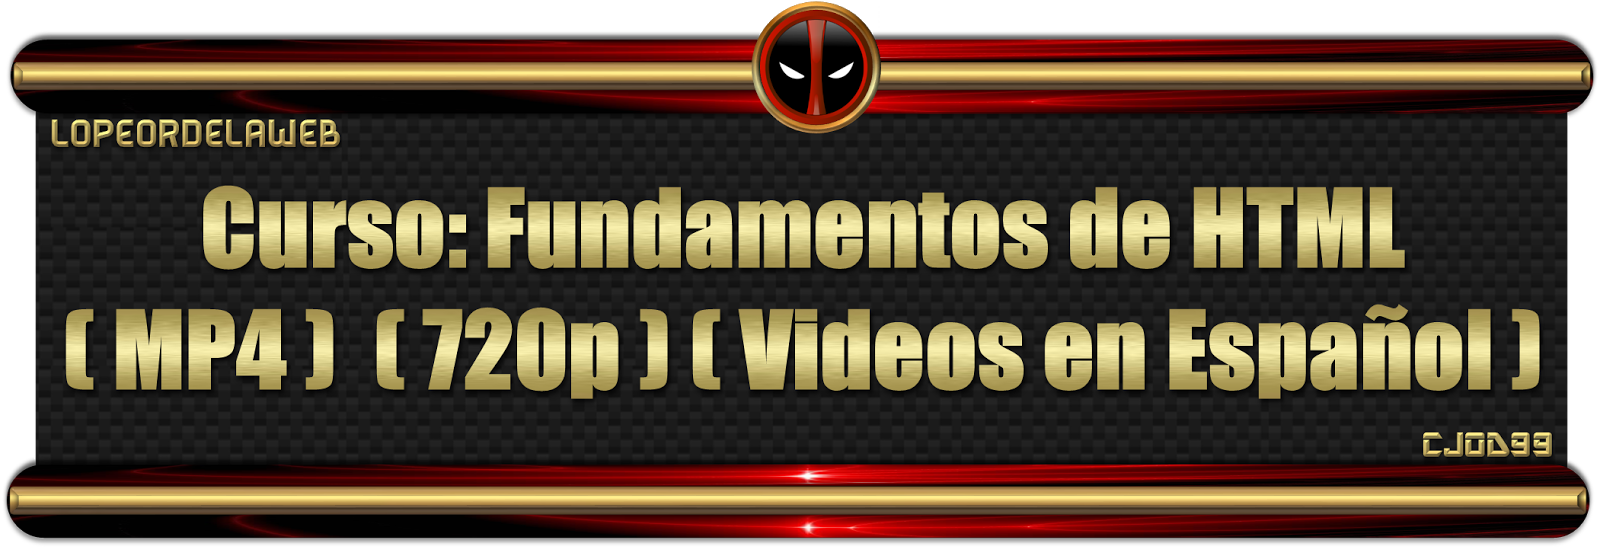 Curso. Fundamentos de HTML videos en Español